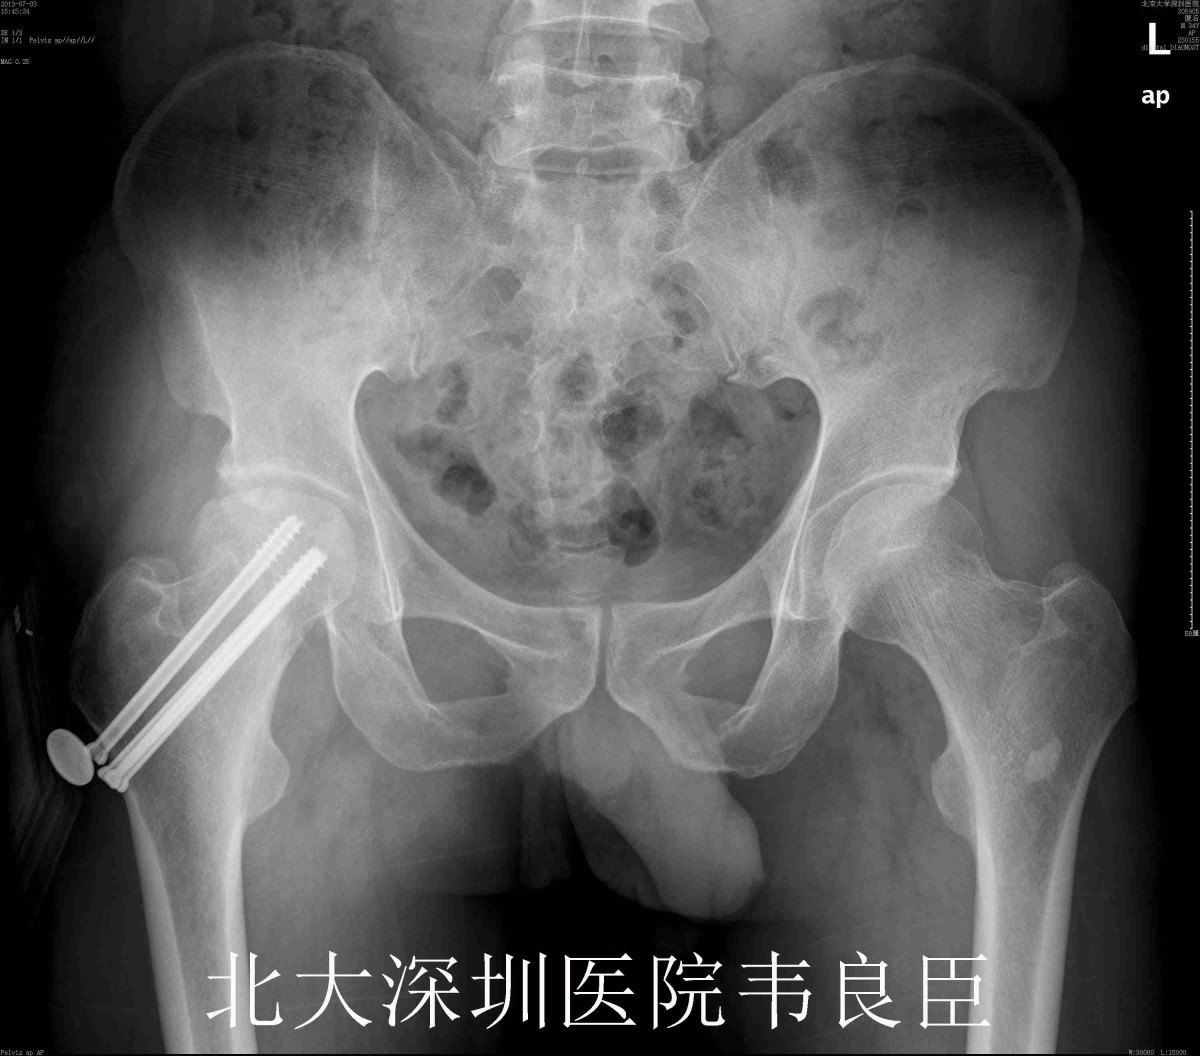 股骨颈骨折髋臼骨折术后股骨头坏死行髋关节置换病例x片